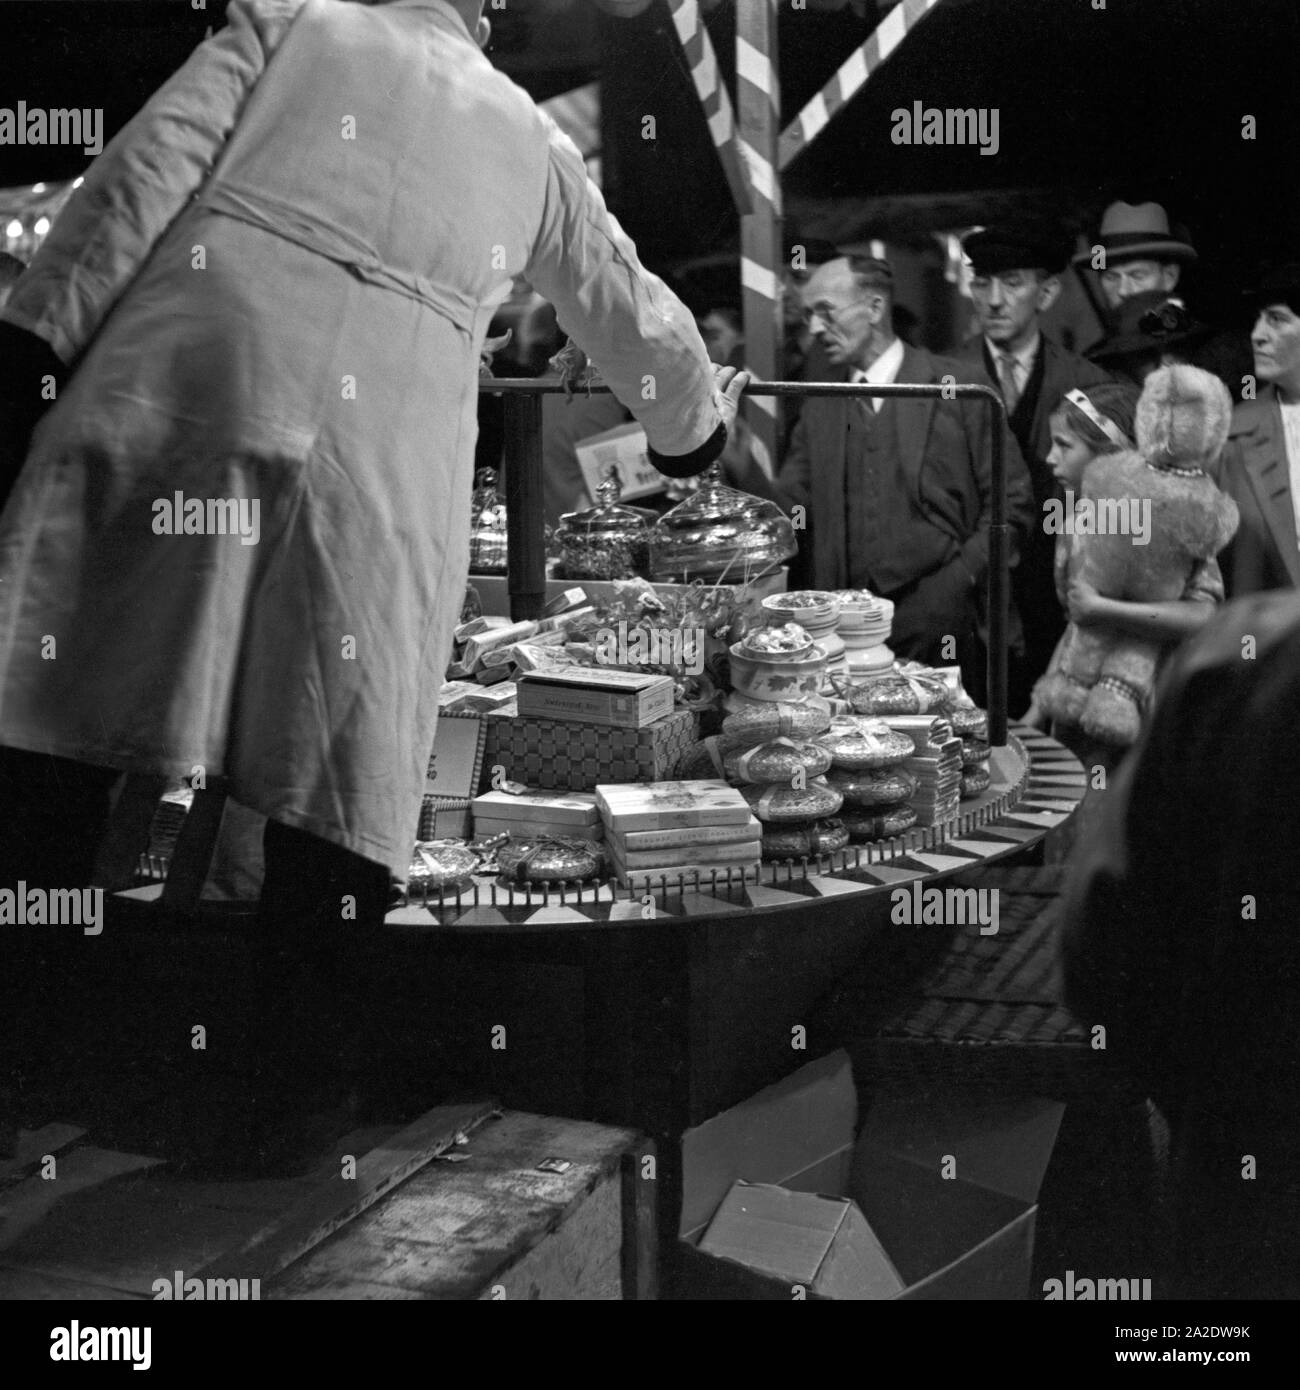 Beim Ringewerfen kann das Publikum viele Preise gewinnen auf der Festwiese in Berlin Stralau, Deutschland 1930er Jahre. Lots of prizes to be won at the skillgaming booth at the Berlin Stralau annual fair, Germany 1930s. Stock Photo